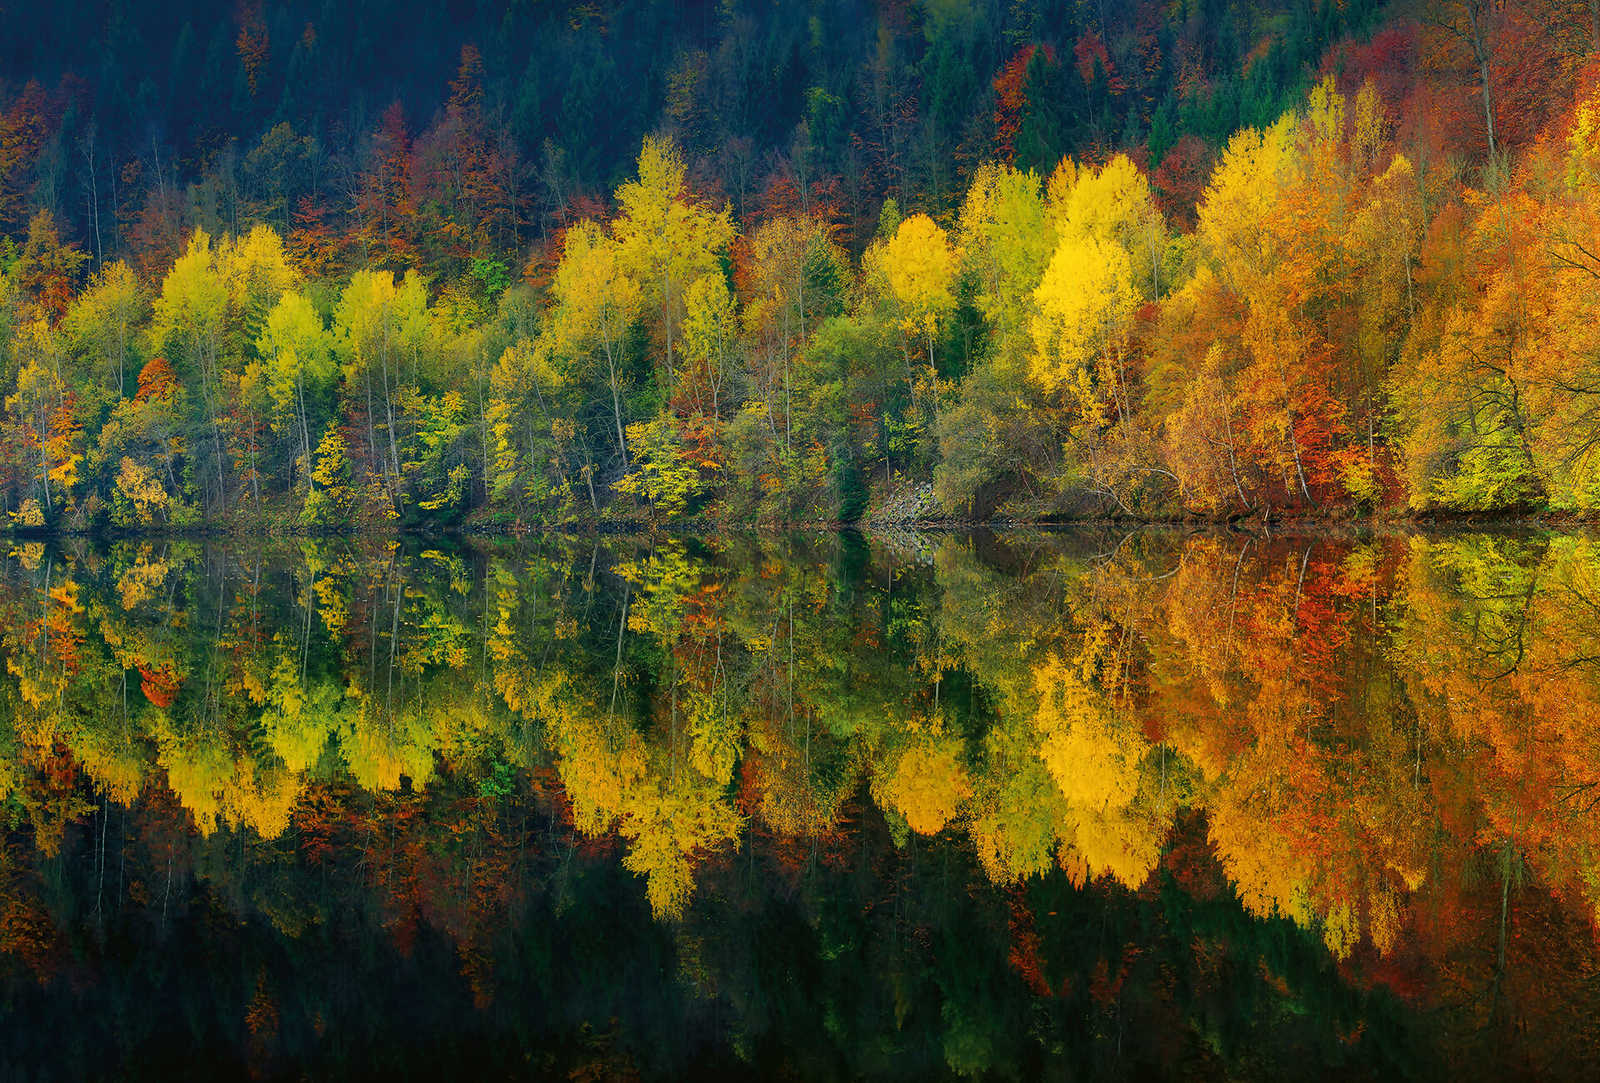 Fototapete Wald am See im Herbst – Gelb, Orange, Grün
